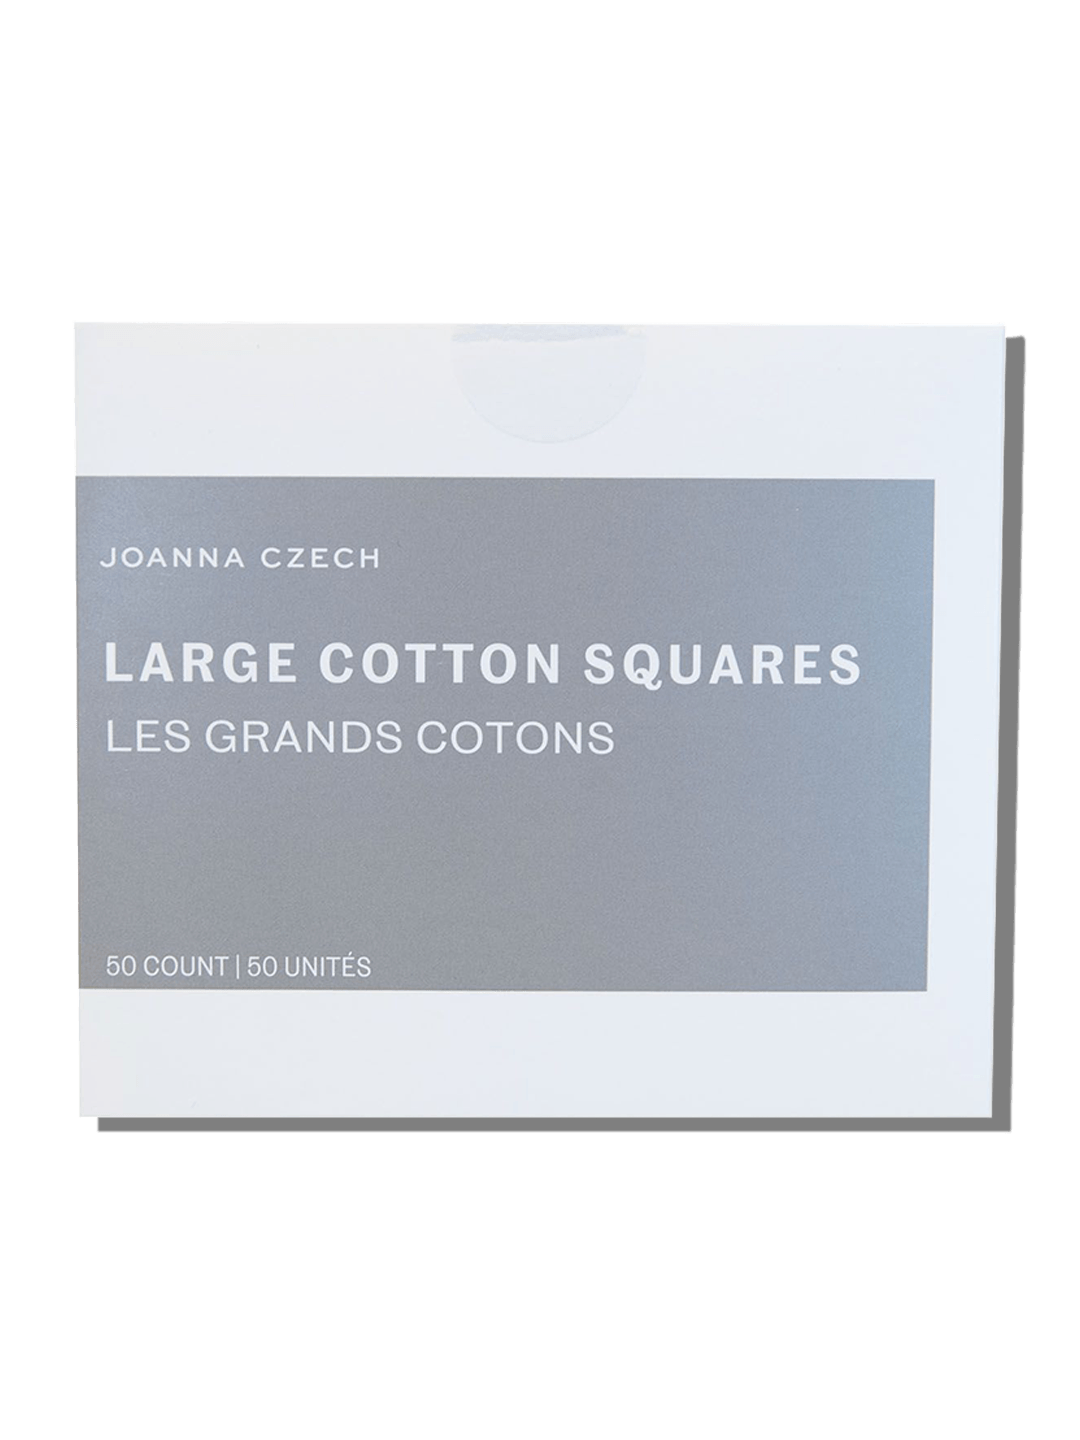 Joanna Czech Cotton Squares - Joanna Czech